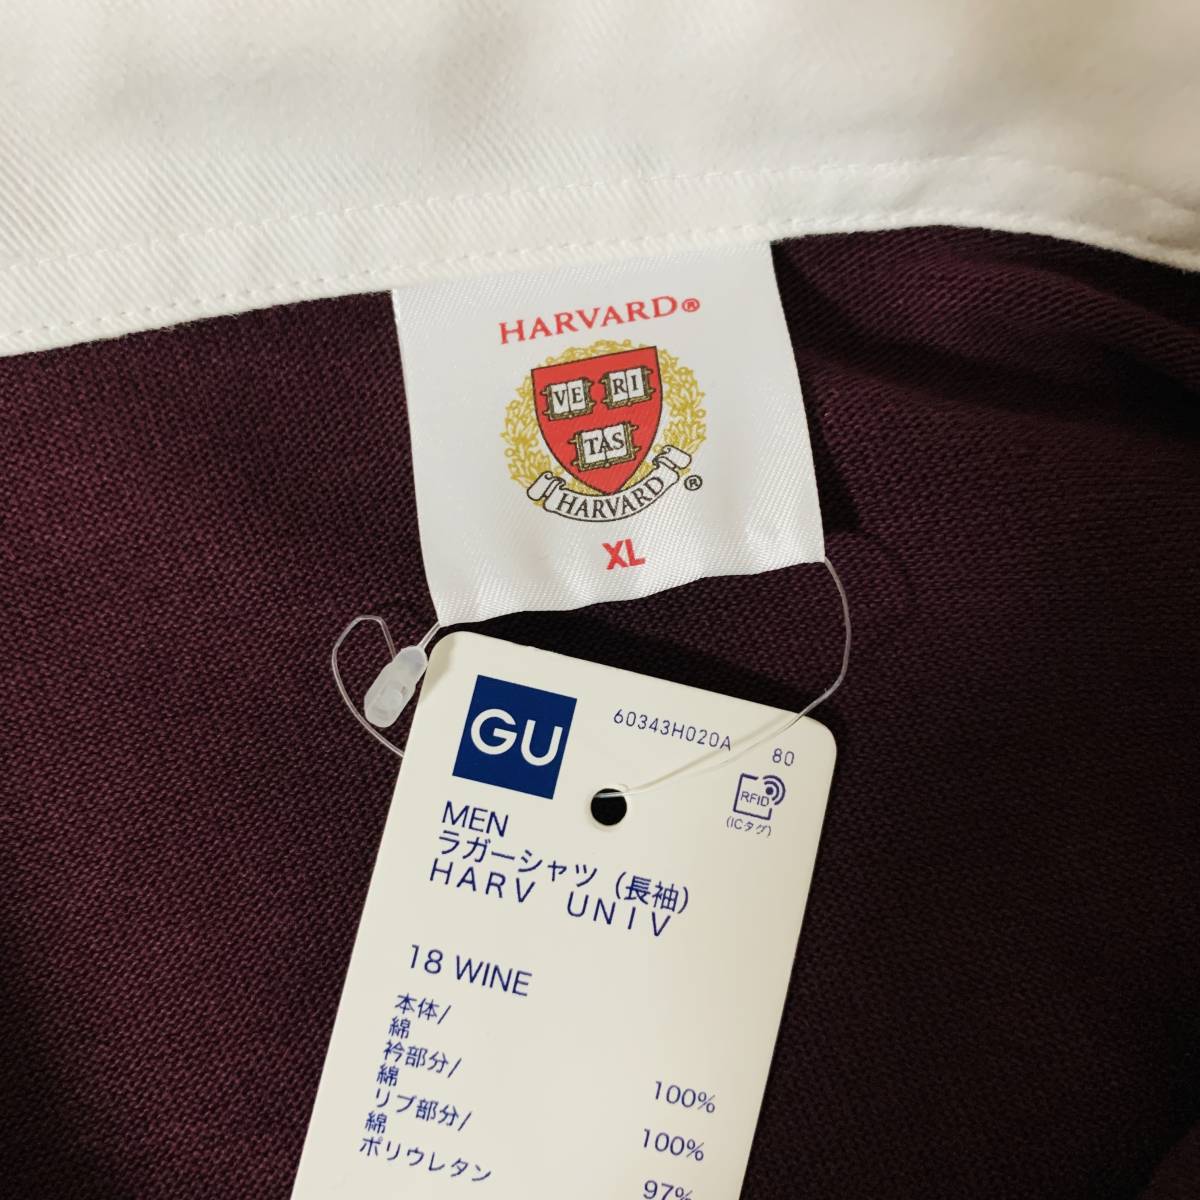 GU(ジーユー) x Harvard university(ハーバード大学) - XLサイズ ラガーシャツ IVYリーグ コラボ ラグビー アメフト(タグ付き・新品未使用)_実際の商品です⑤